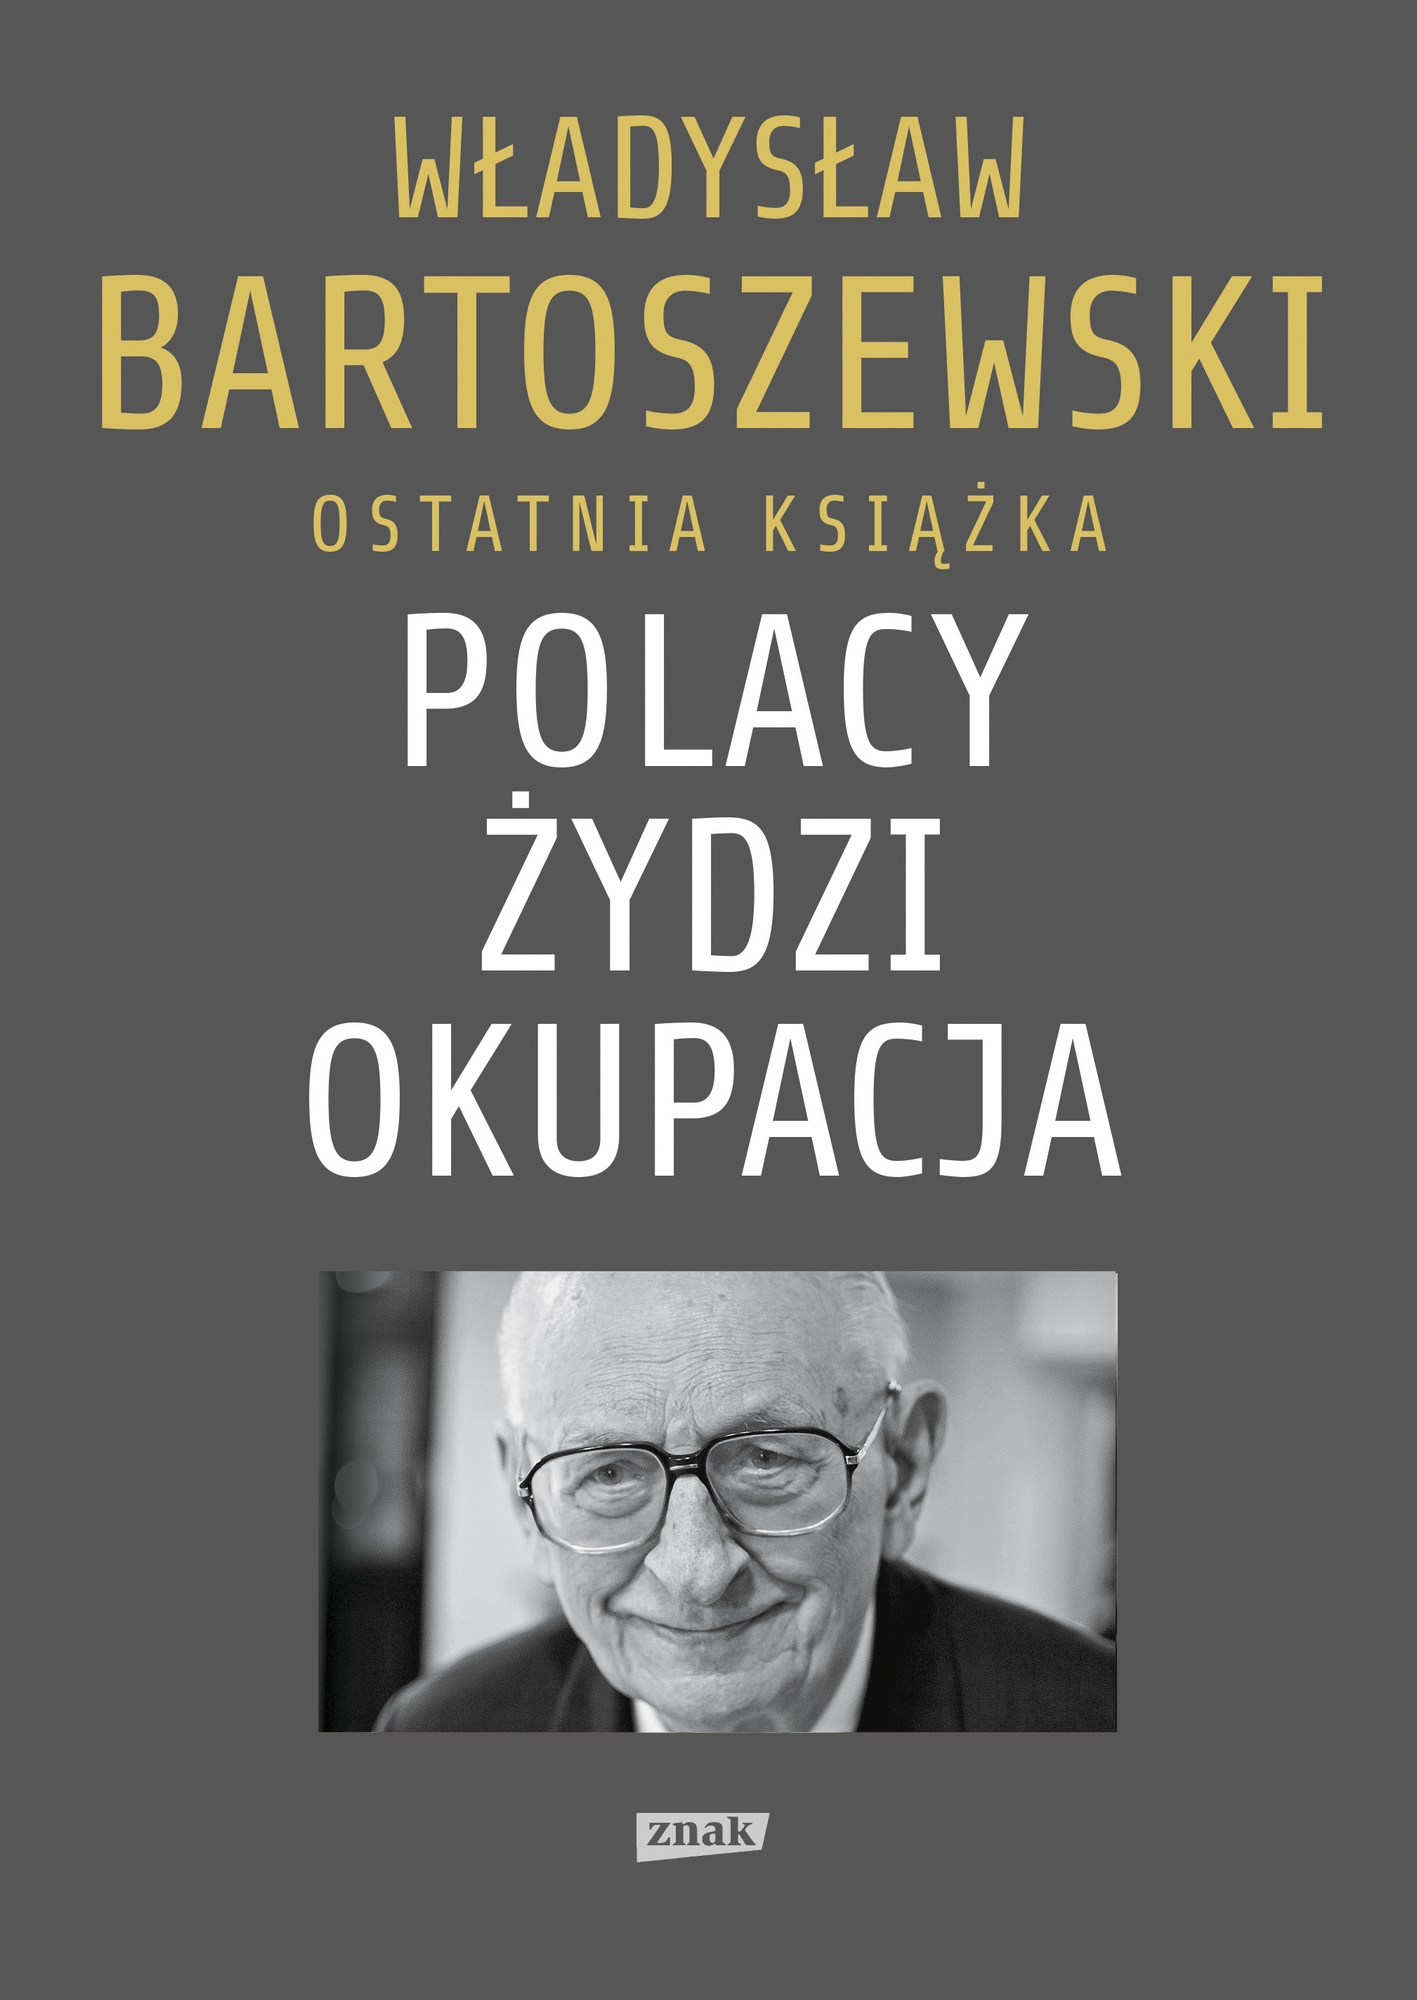 Ostatnią książkę Władysława Bartoszewskiego, pt. "Polacy - Żydzi - okupacja" można kupić na stronie wydawnictwa Znak.